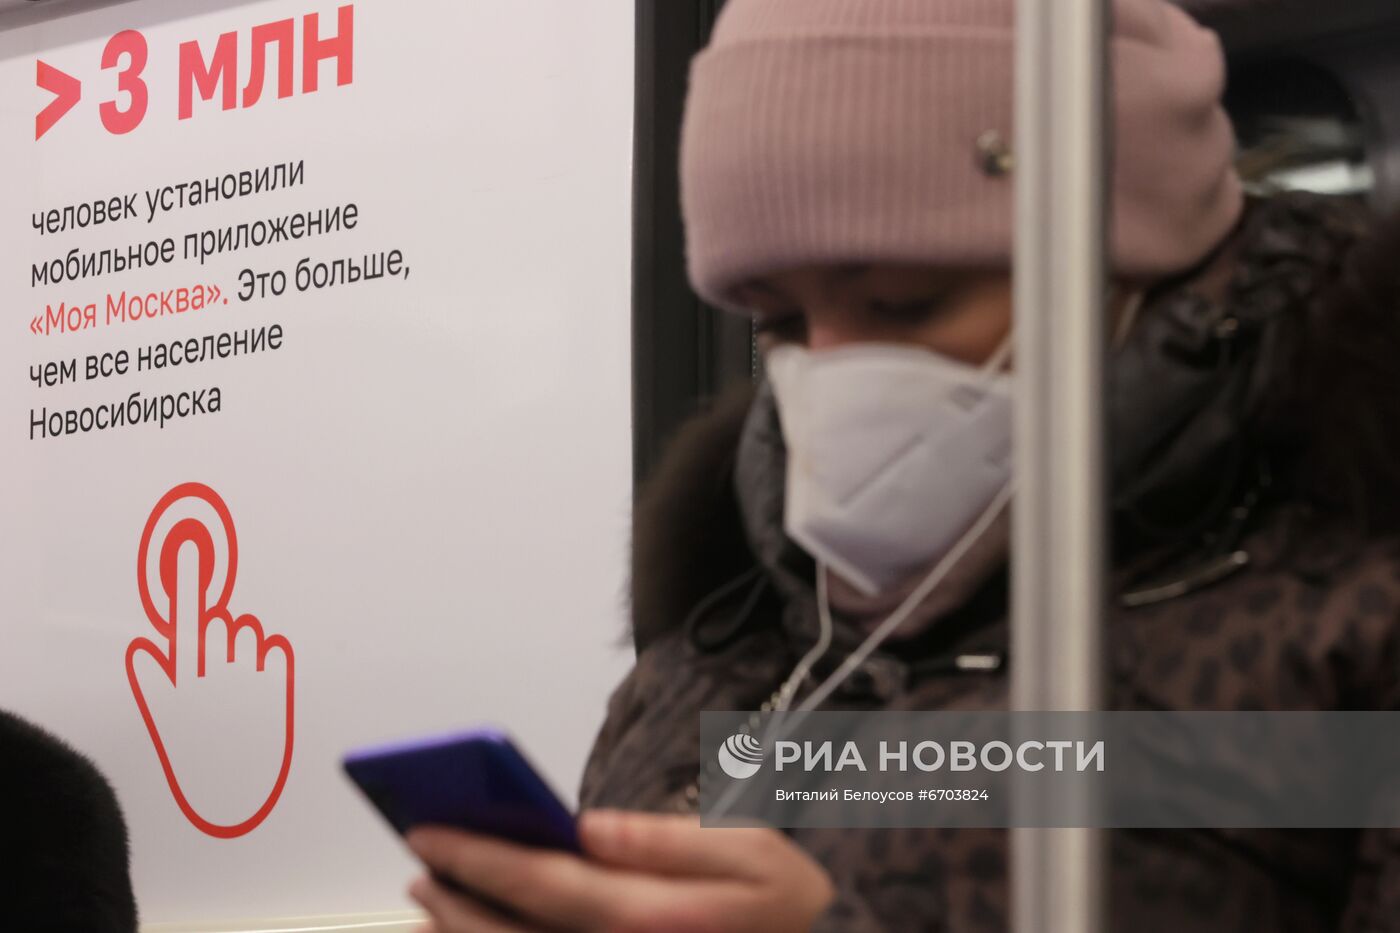 Запуск тематического поезда метро в честь 10-летия городских электронных услуг Москвы